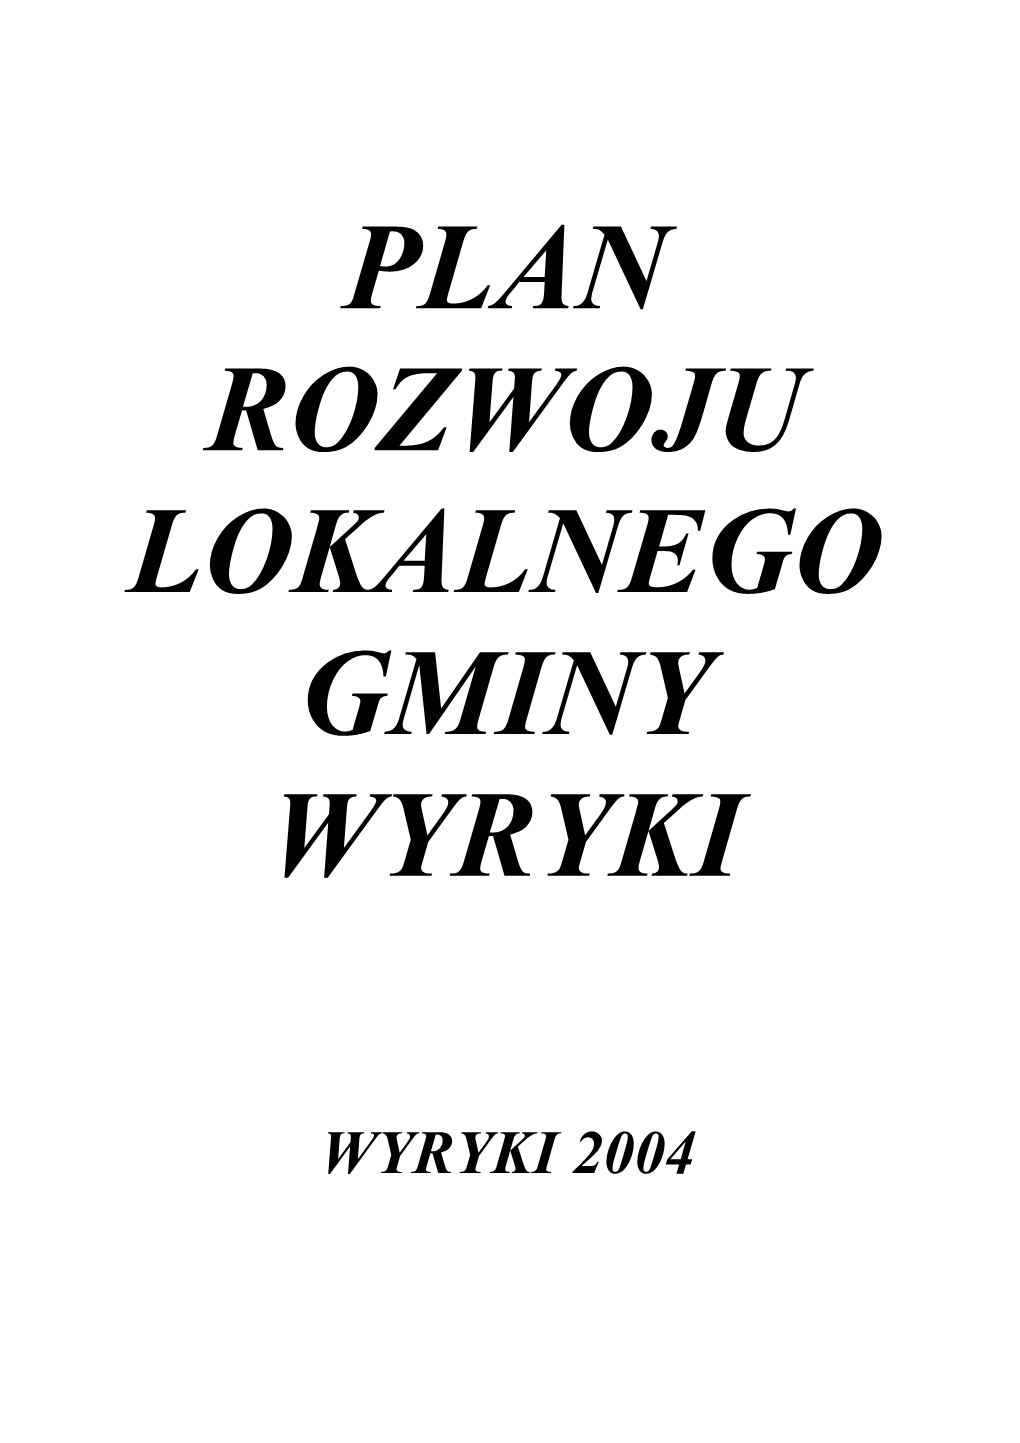 Wyryki 2004 Plan Rozwoju Lokalnego Gminy Wyryki Wyryki 2004 ______Spis Treści